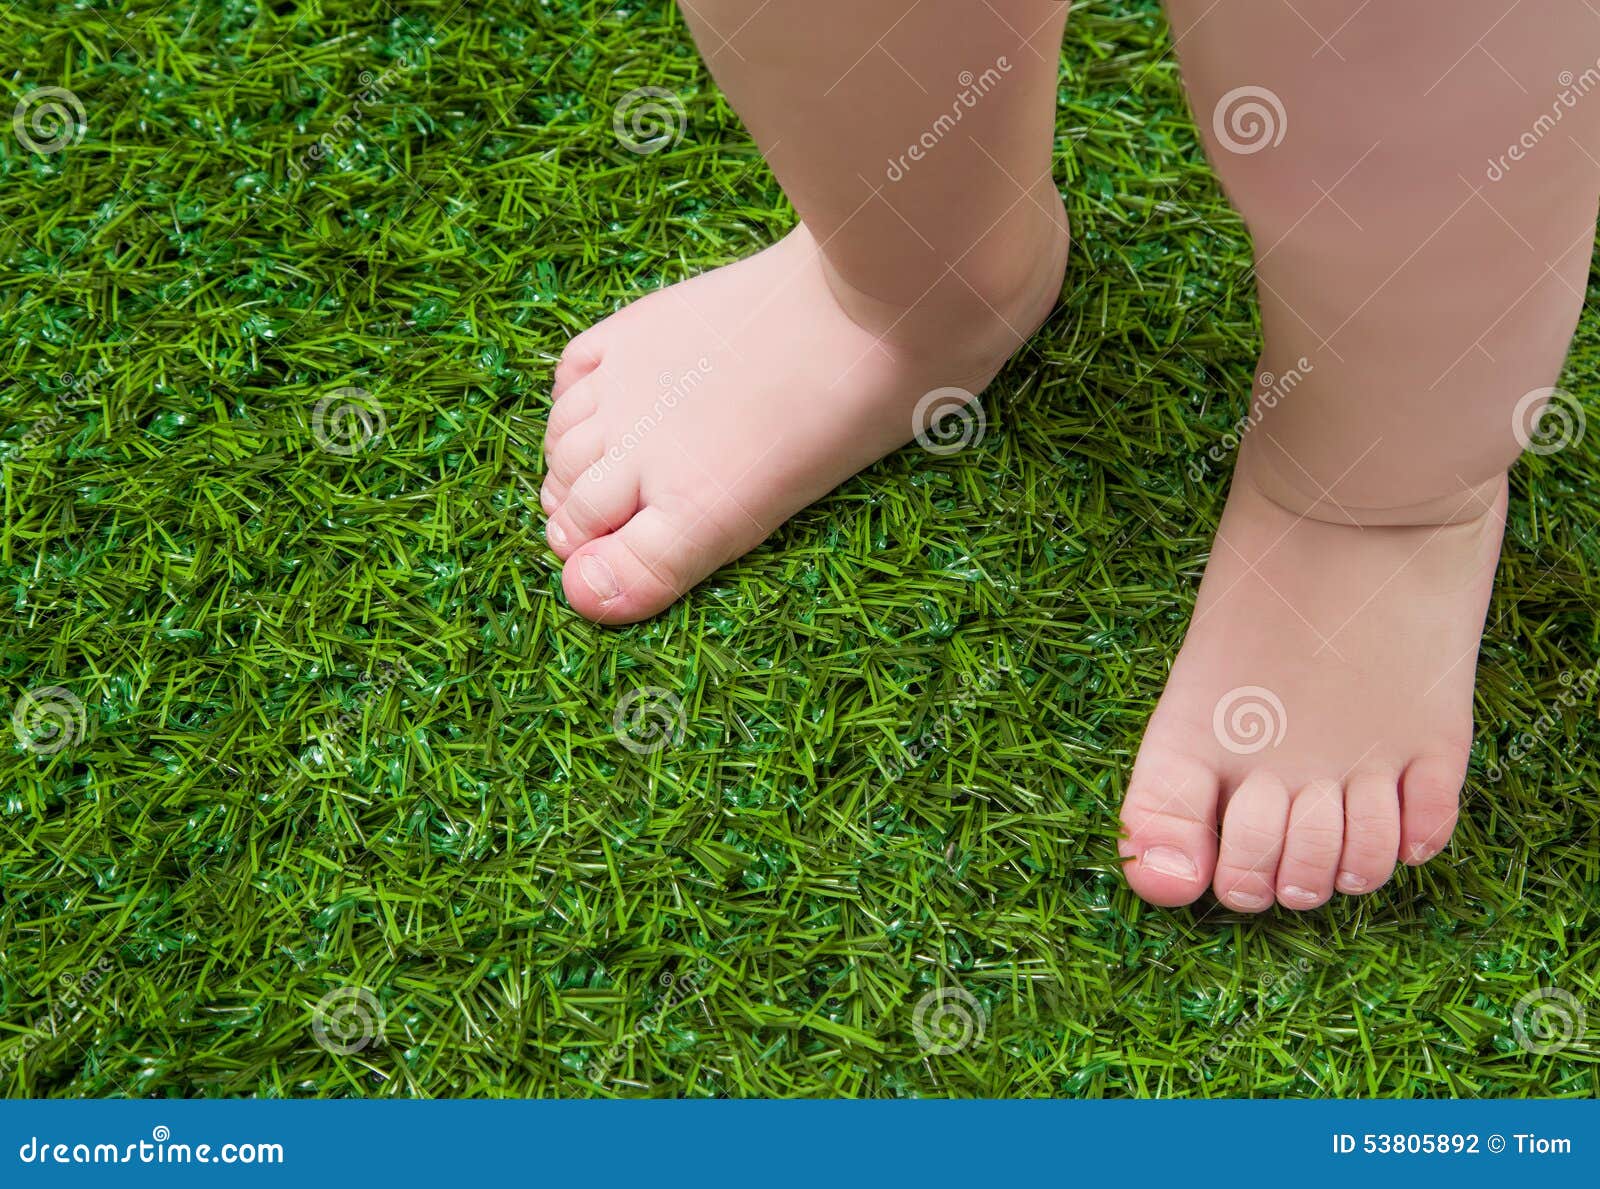 Green legs. Детские босые ноги на траве. Детские ноги на траве. Ребенок босиком по траве. Ноги на газоне.